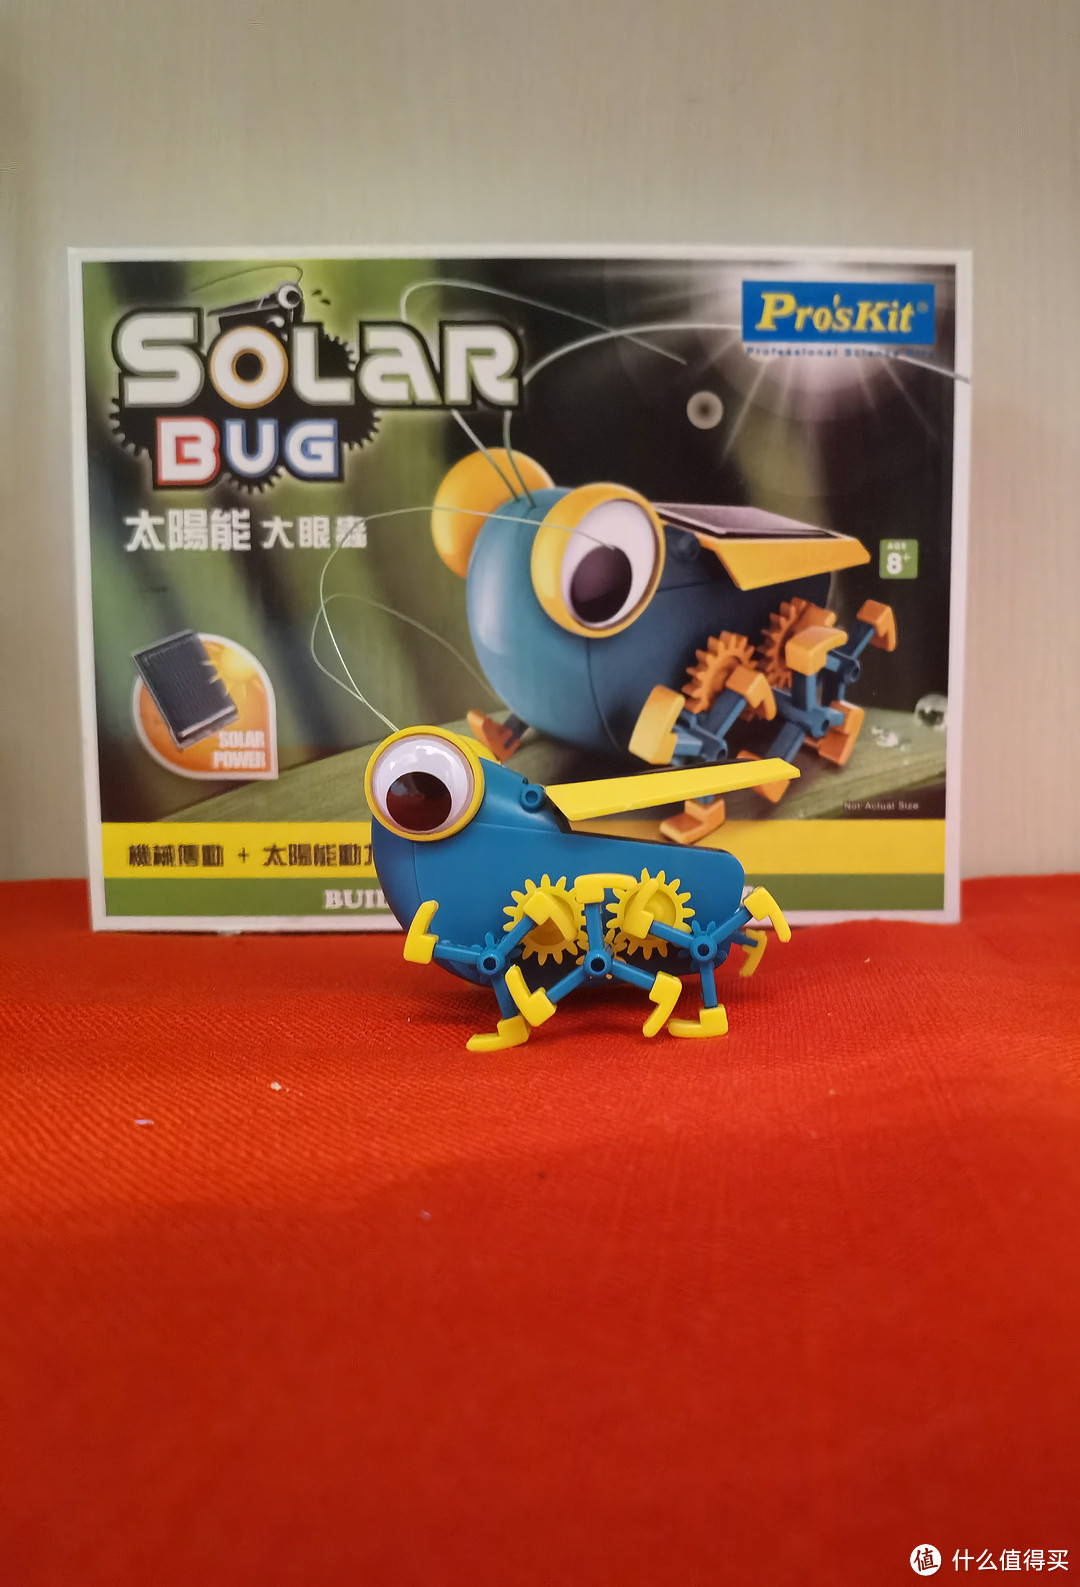 从此世界多了一只不知疲倦的虫虫-呆萌大眼虫太阳能玩具